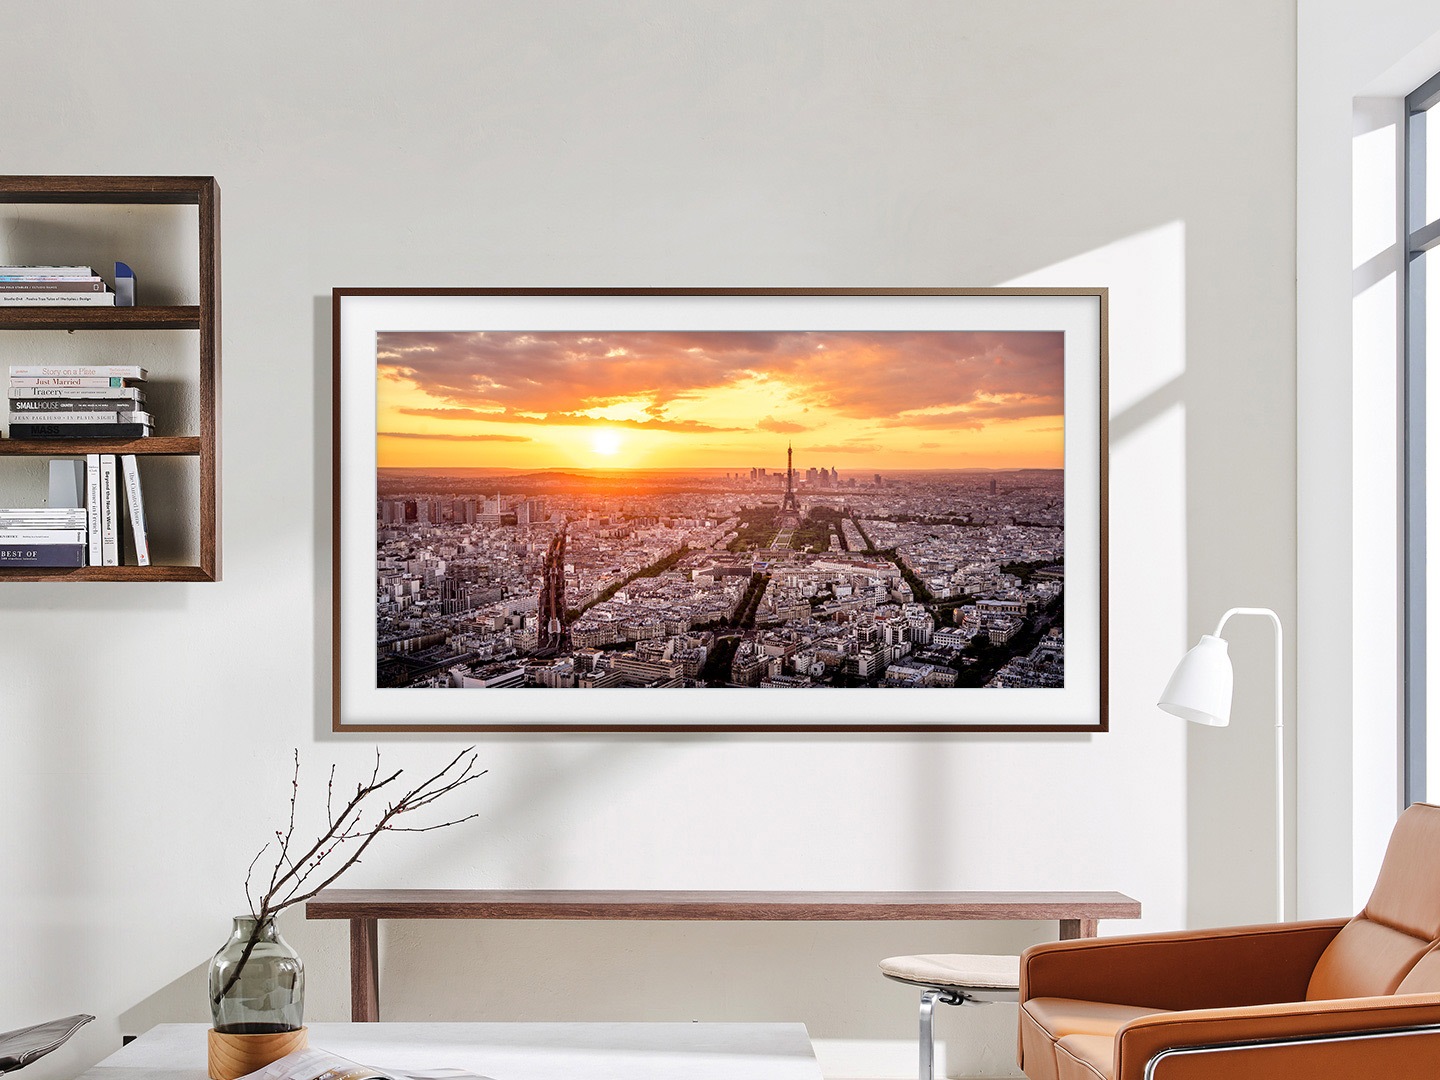 يظهر تلفزيون The Frame مُثبتاً على الحائط في غرفة معيشة ويعرض غروب الشمس من أعلى المدينة.